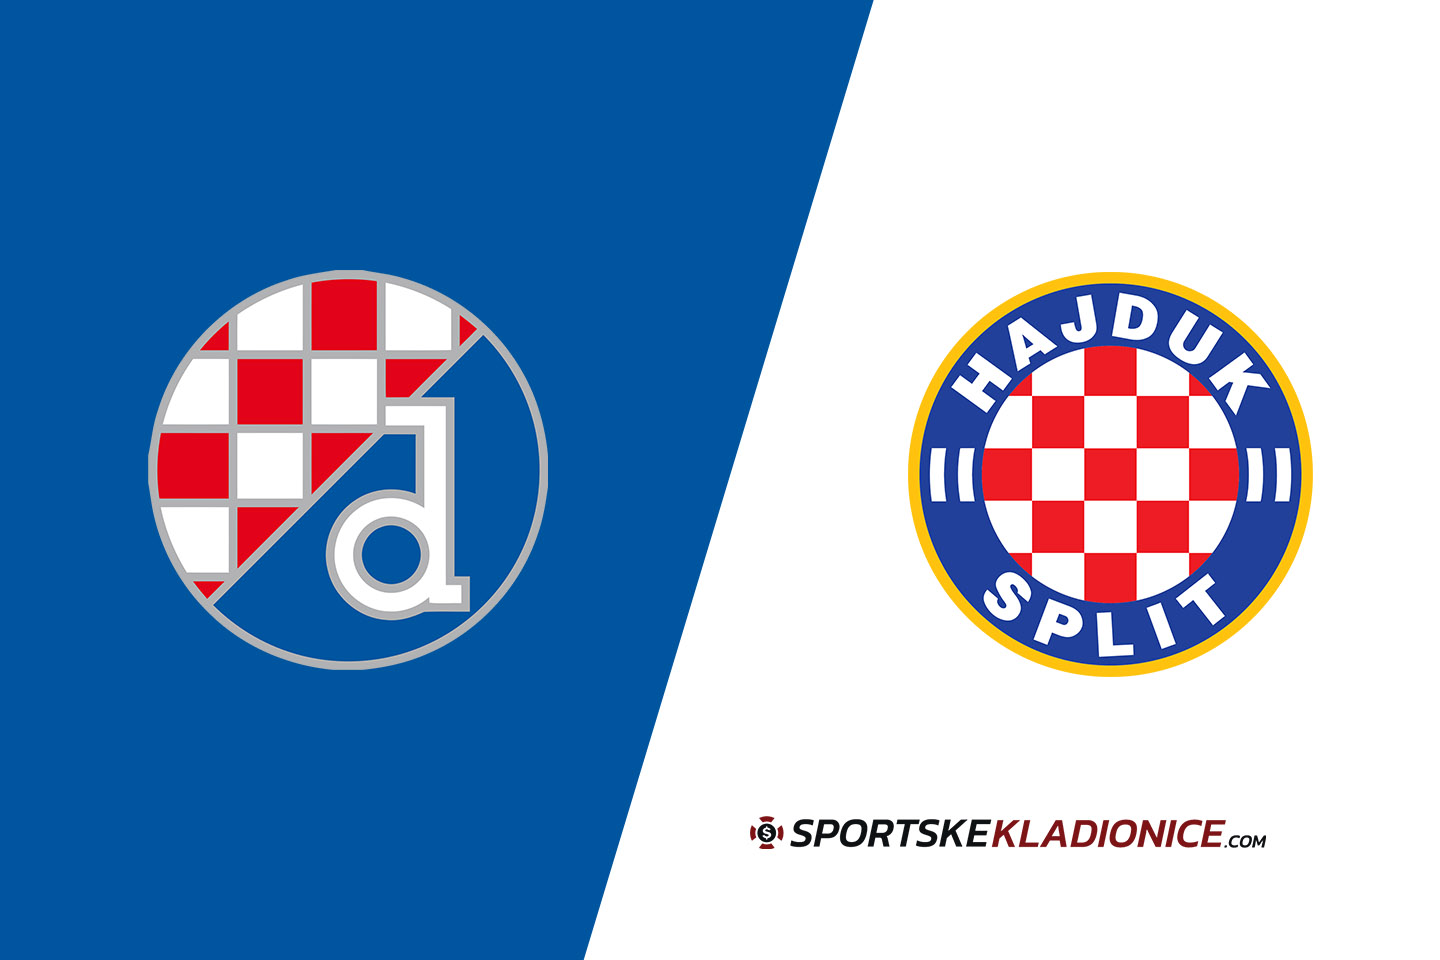 GNK Dinamo Zagreb v HNK Hadjuk Split 